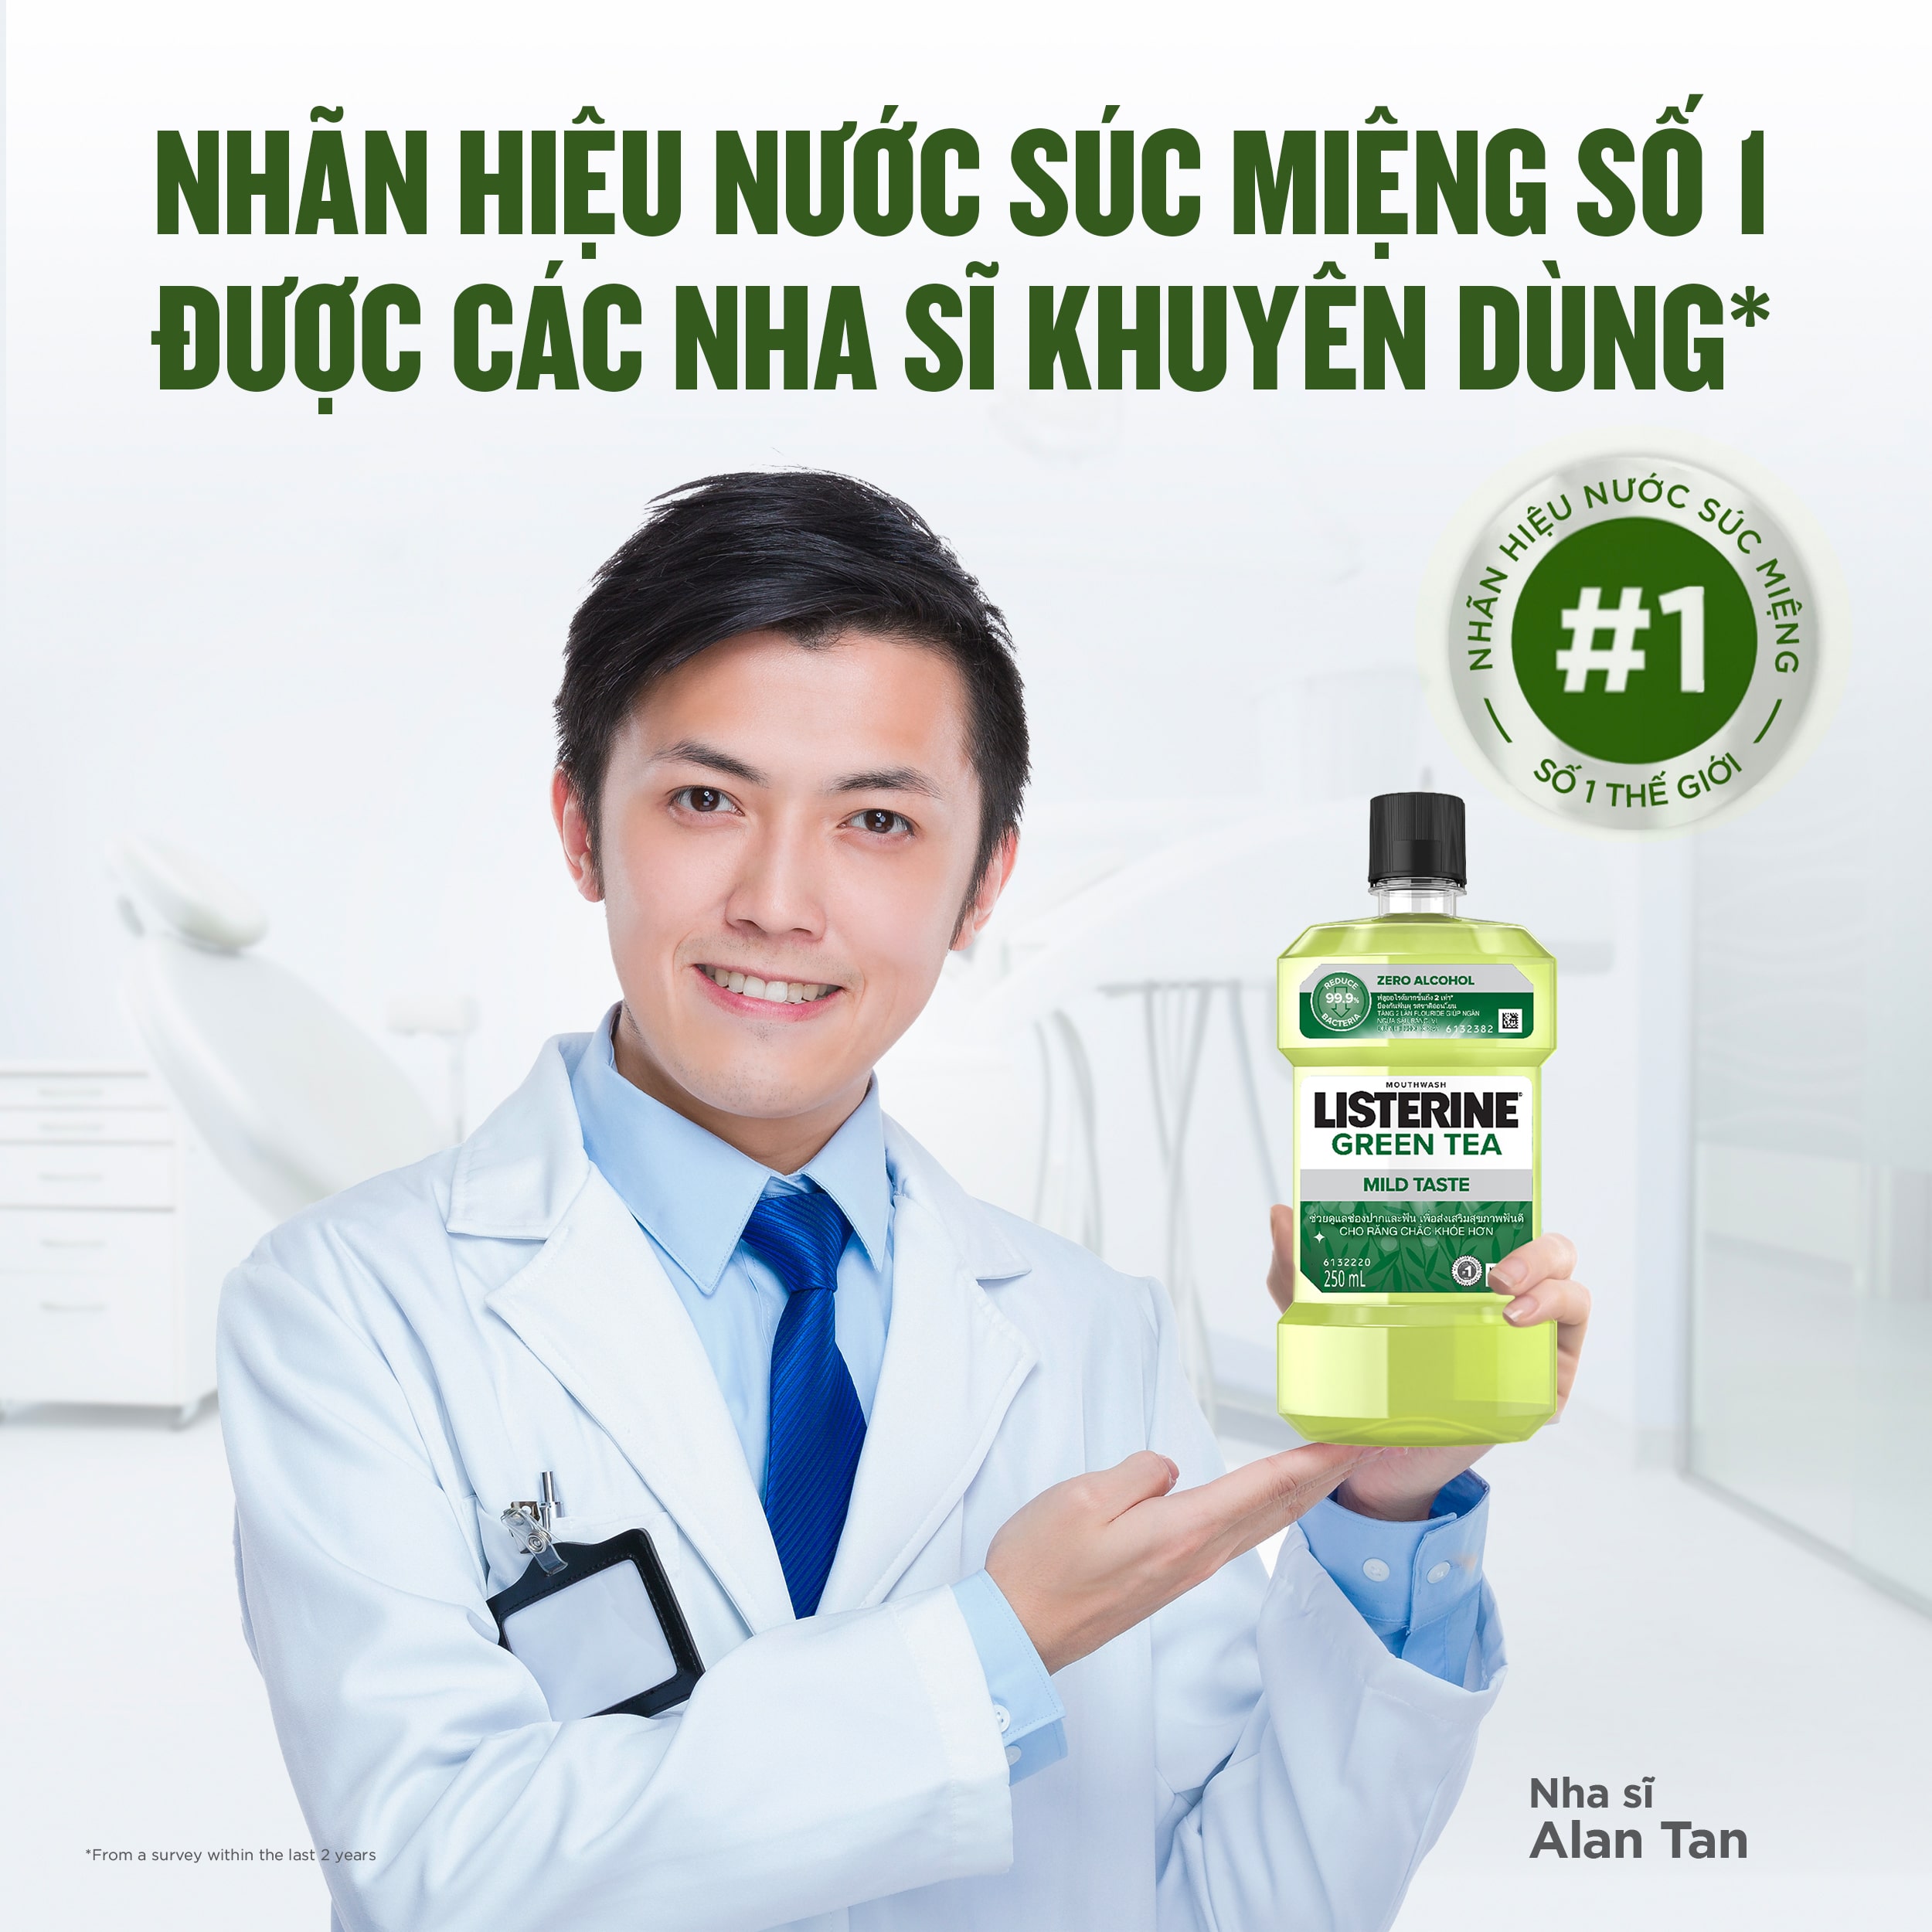 Nước Súc Miệng ngừa sâu răng Listerine natural green tea 250ml - 100953222